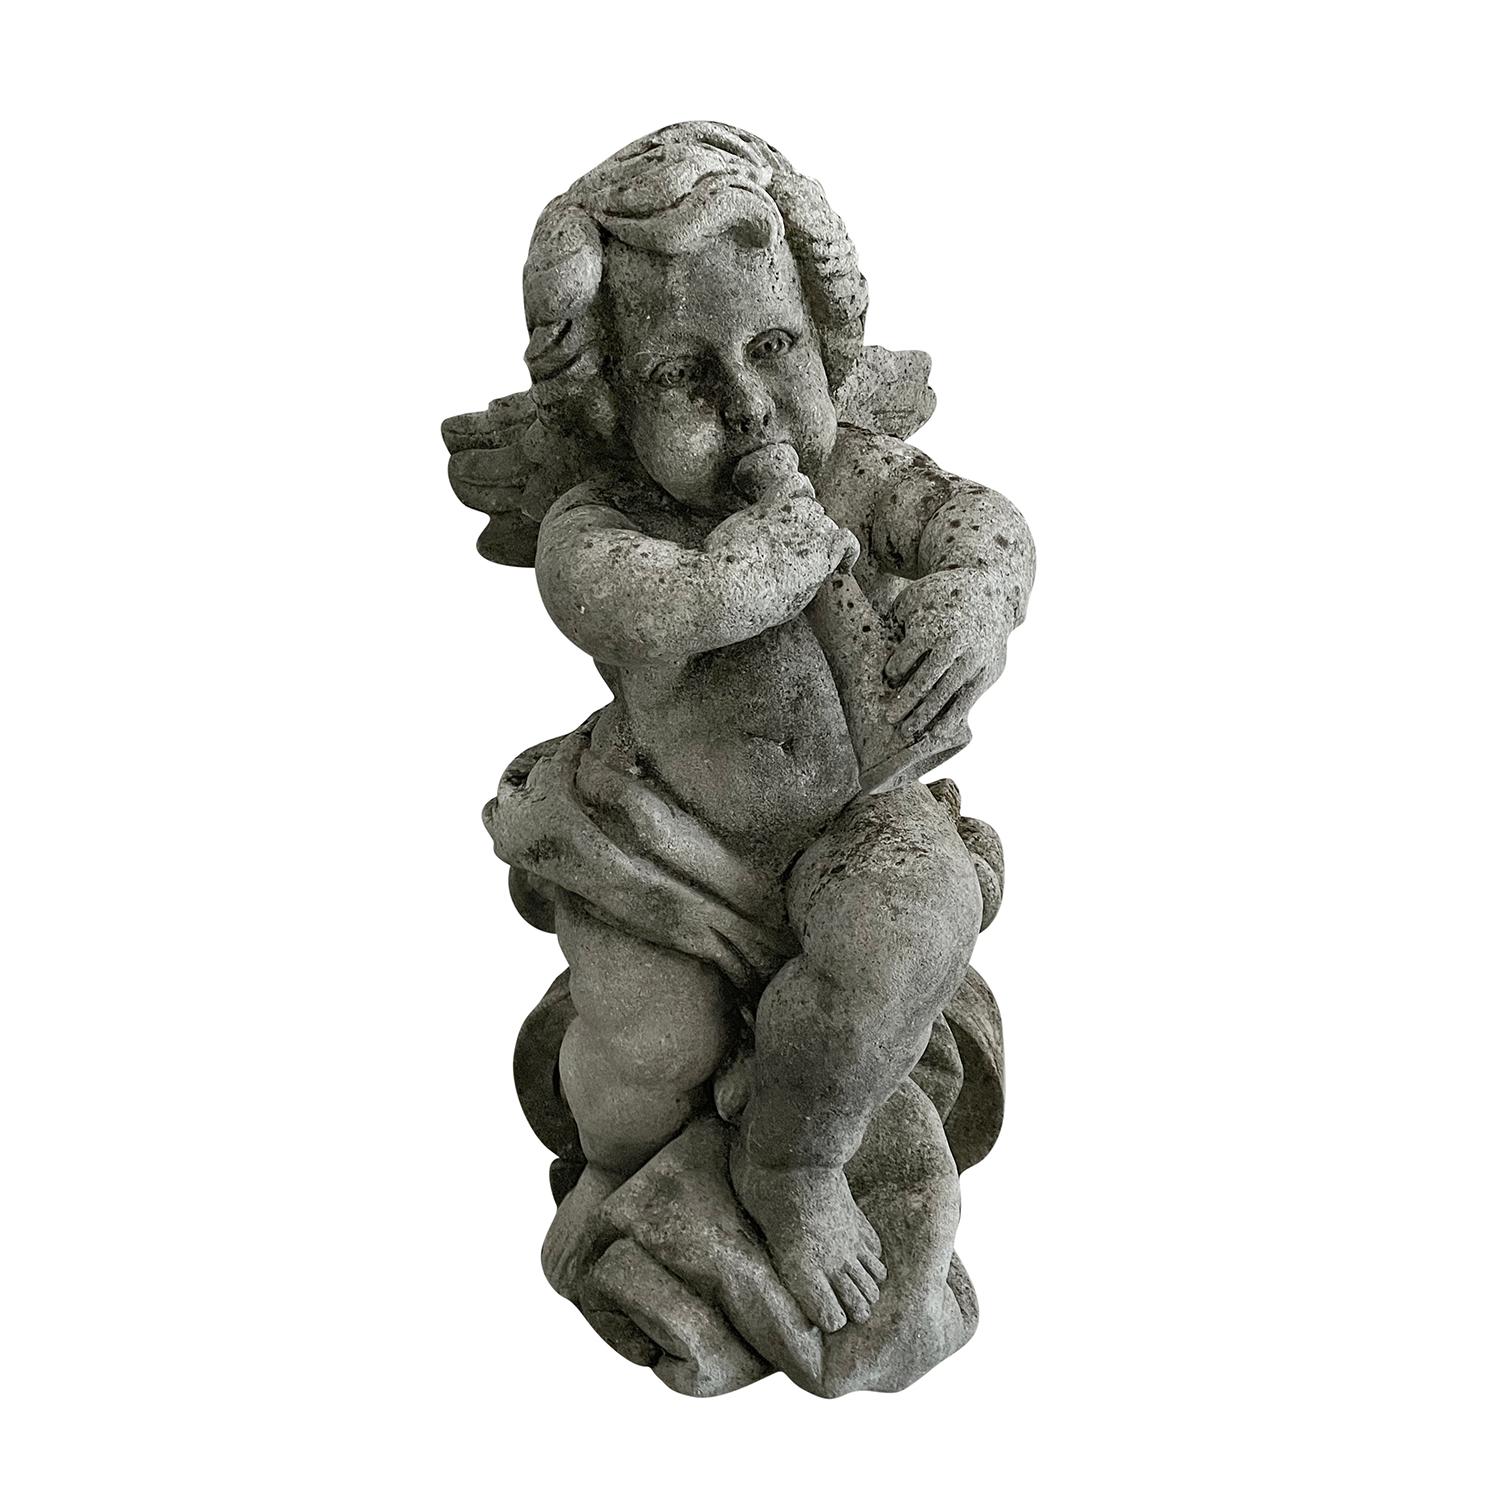 19th Century French Pair of Antique Limestone Cherubs - Les Anges de la Musique For Sale 2